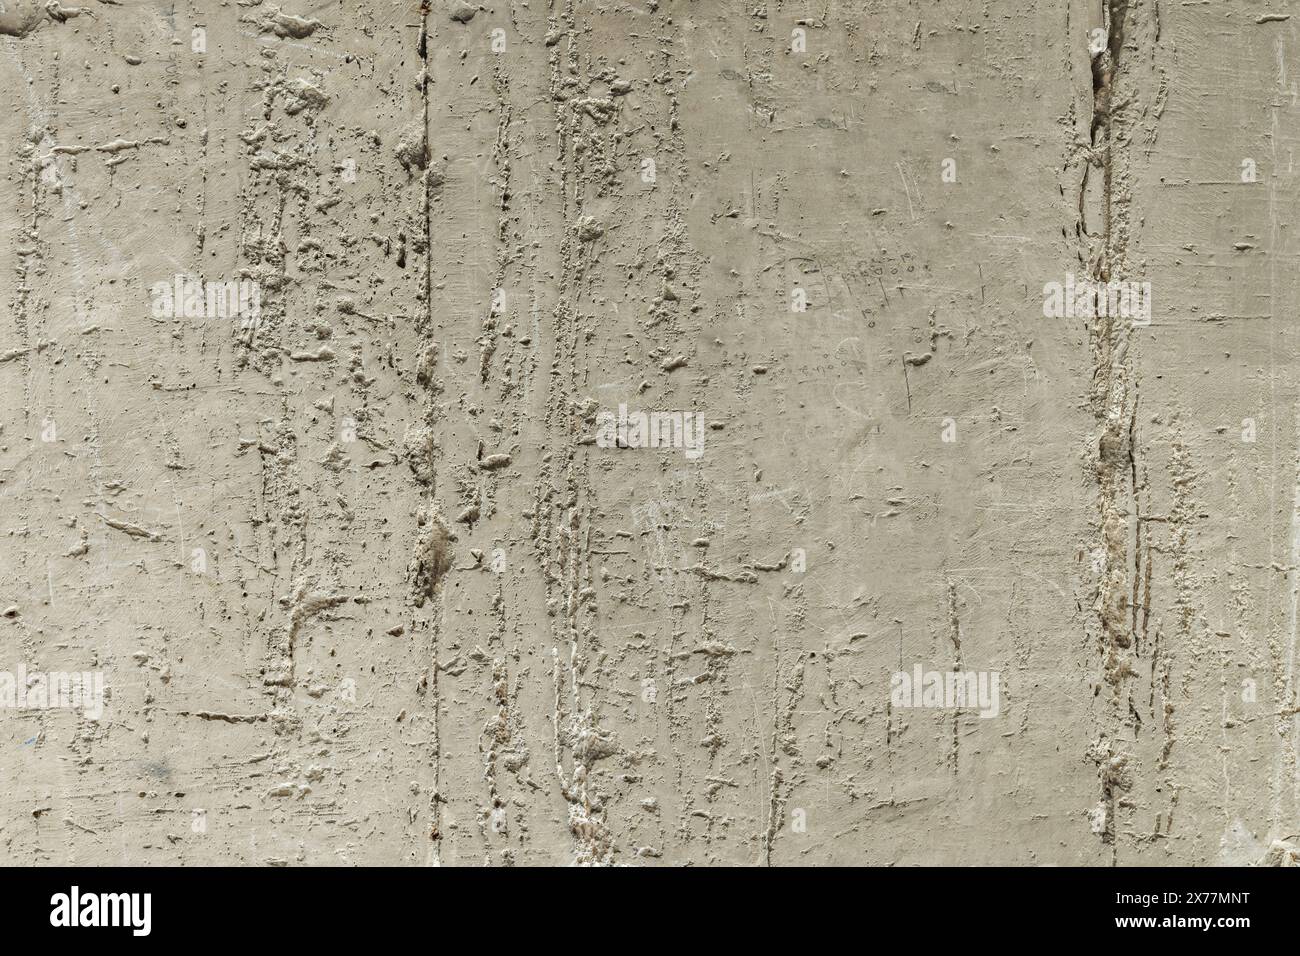 Eine Wand in schlechtem Zustand mit Lack und Spänen, die sich ablösen. Vektor-Zementtextur Hintergrund Stockfoto